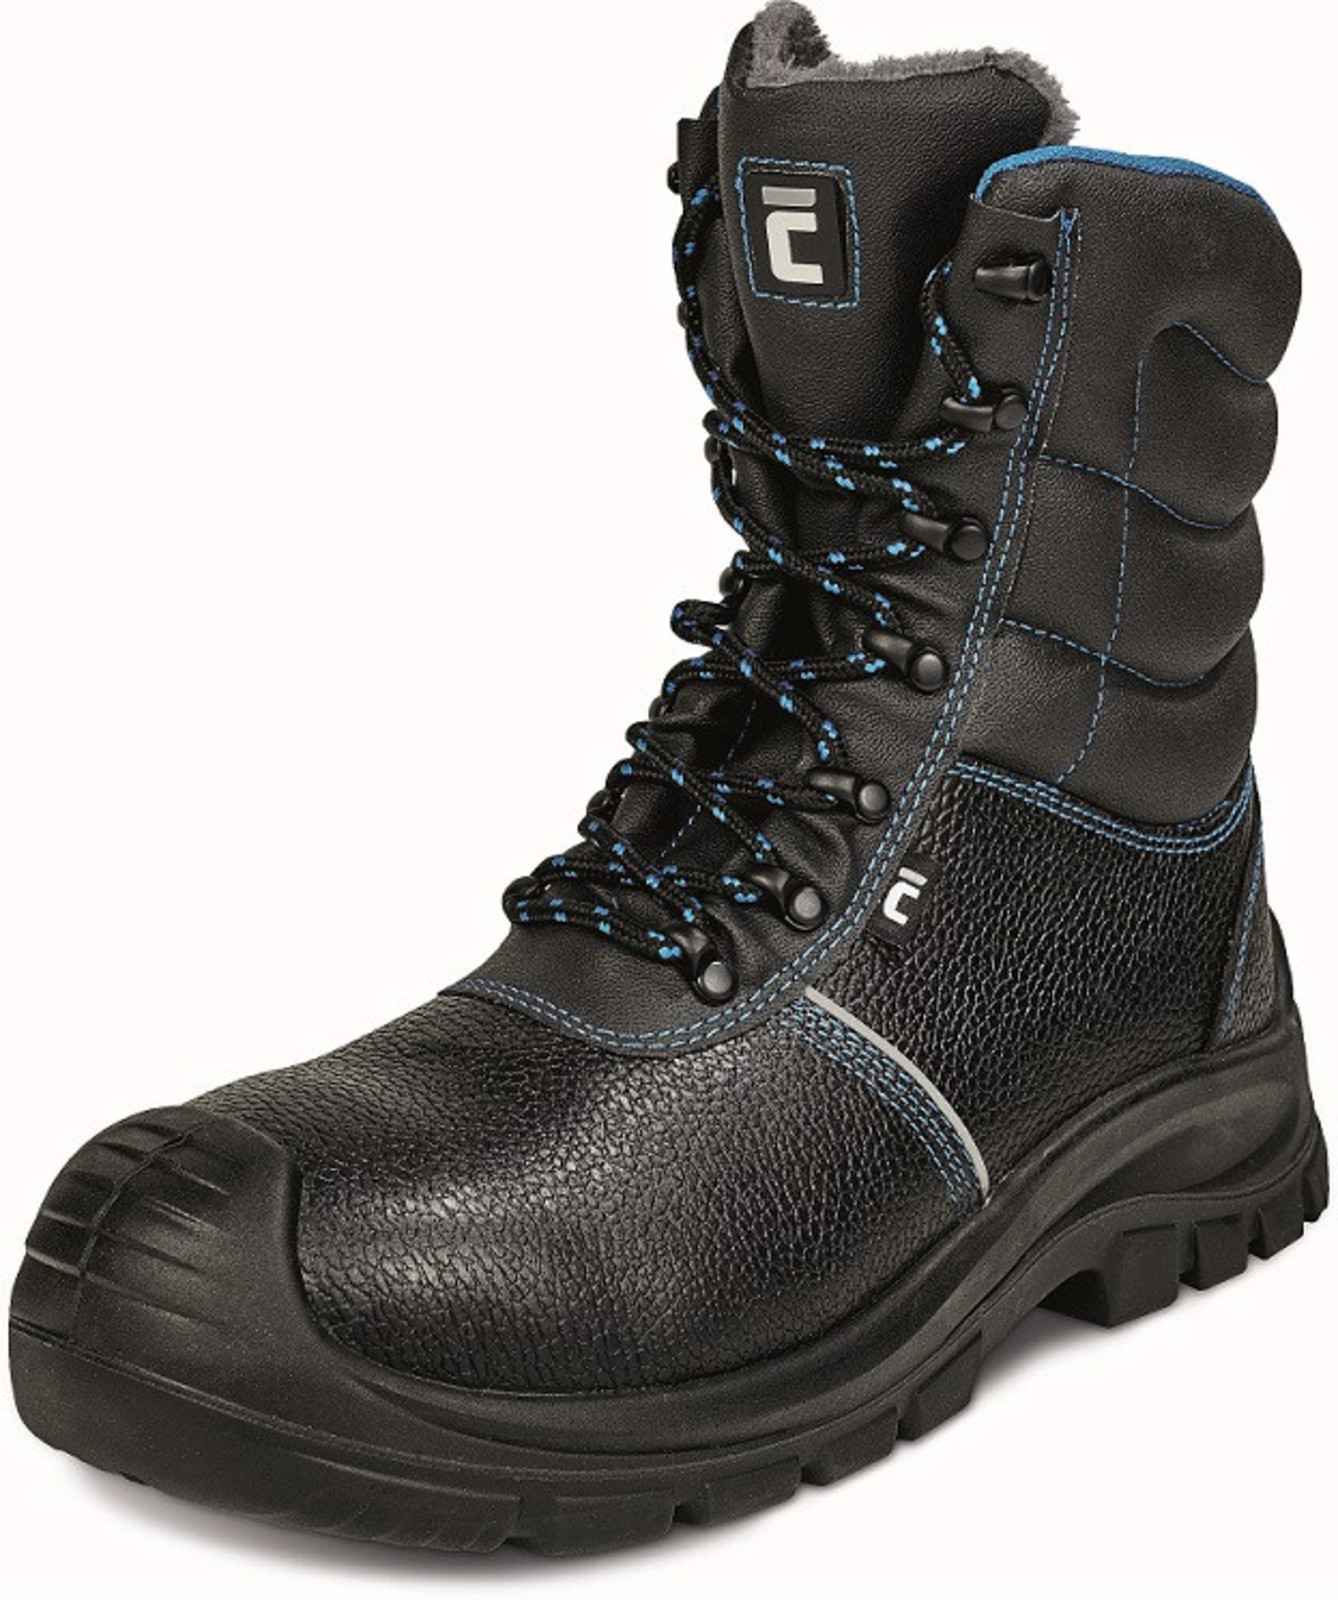 Zimná vysoká bezpečnostná obuv Raven XT S3 - veľkosť: 50, farba: čierna